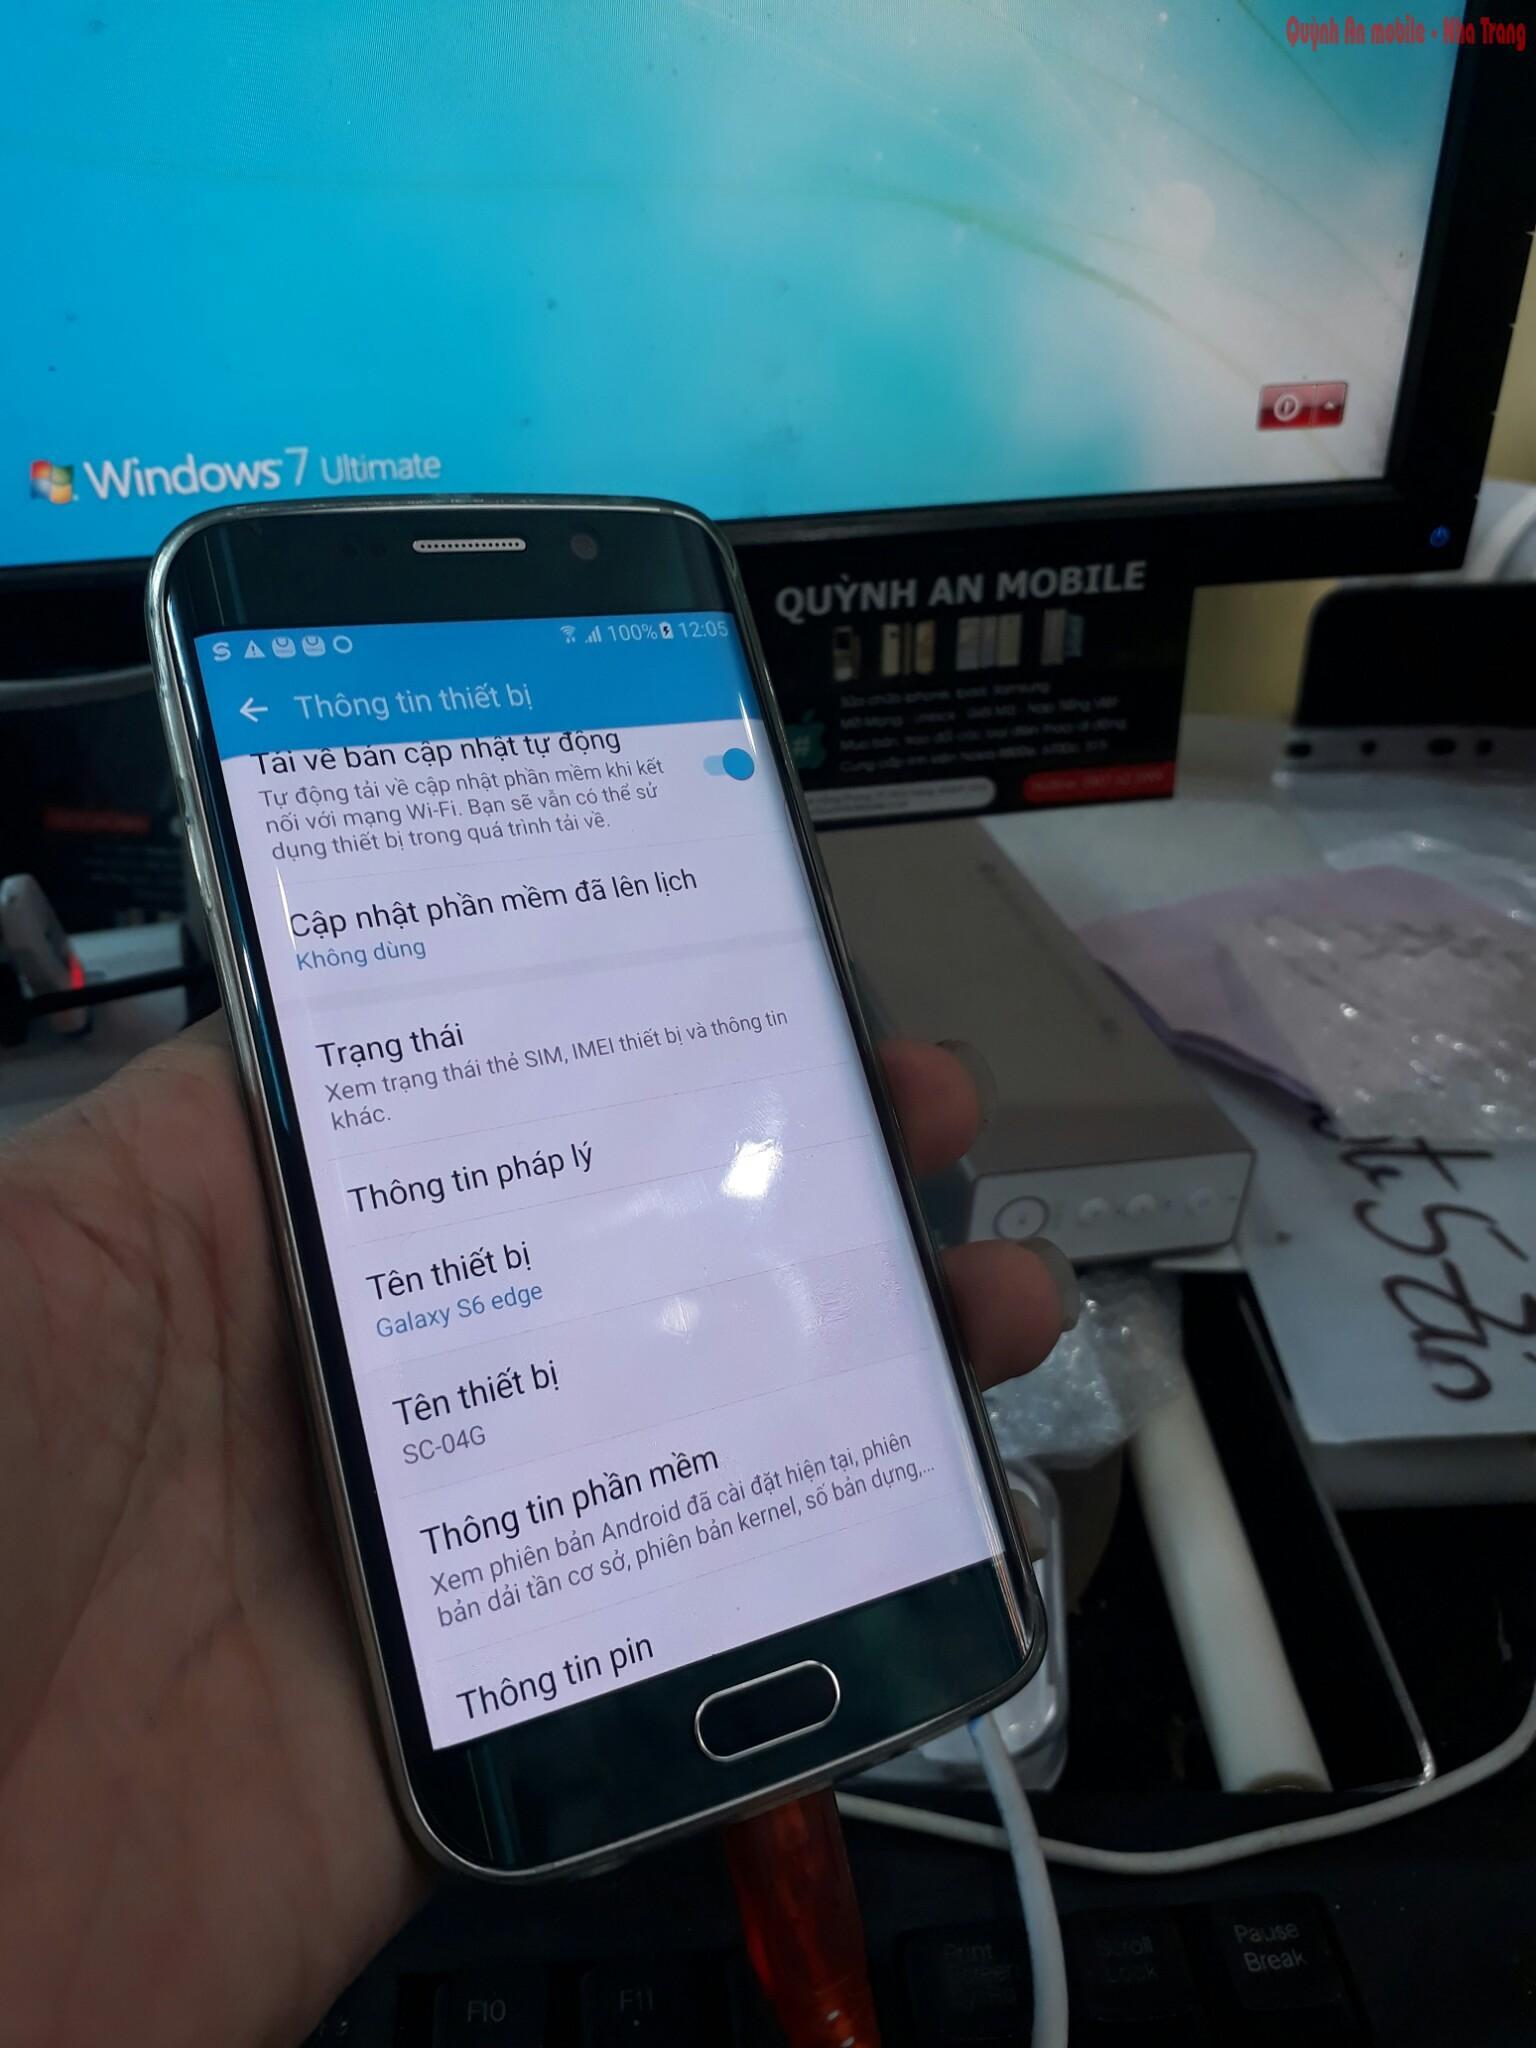 Máy Samsung galaxy S6 edge SC-04G xách tay về đã được nạp tiếng Việt sử dụng như máy quốc tế và được Việt hóa hoàn toàn